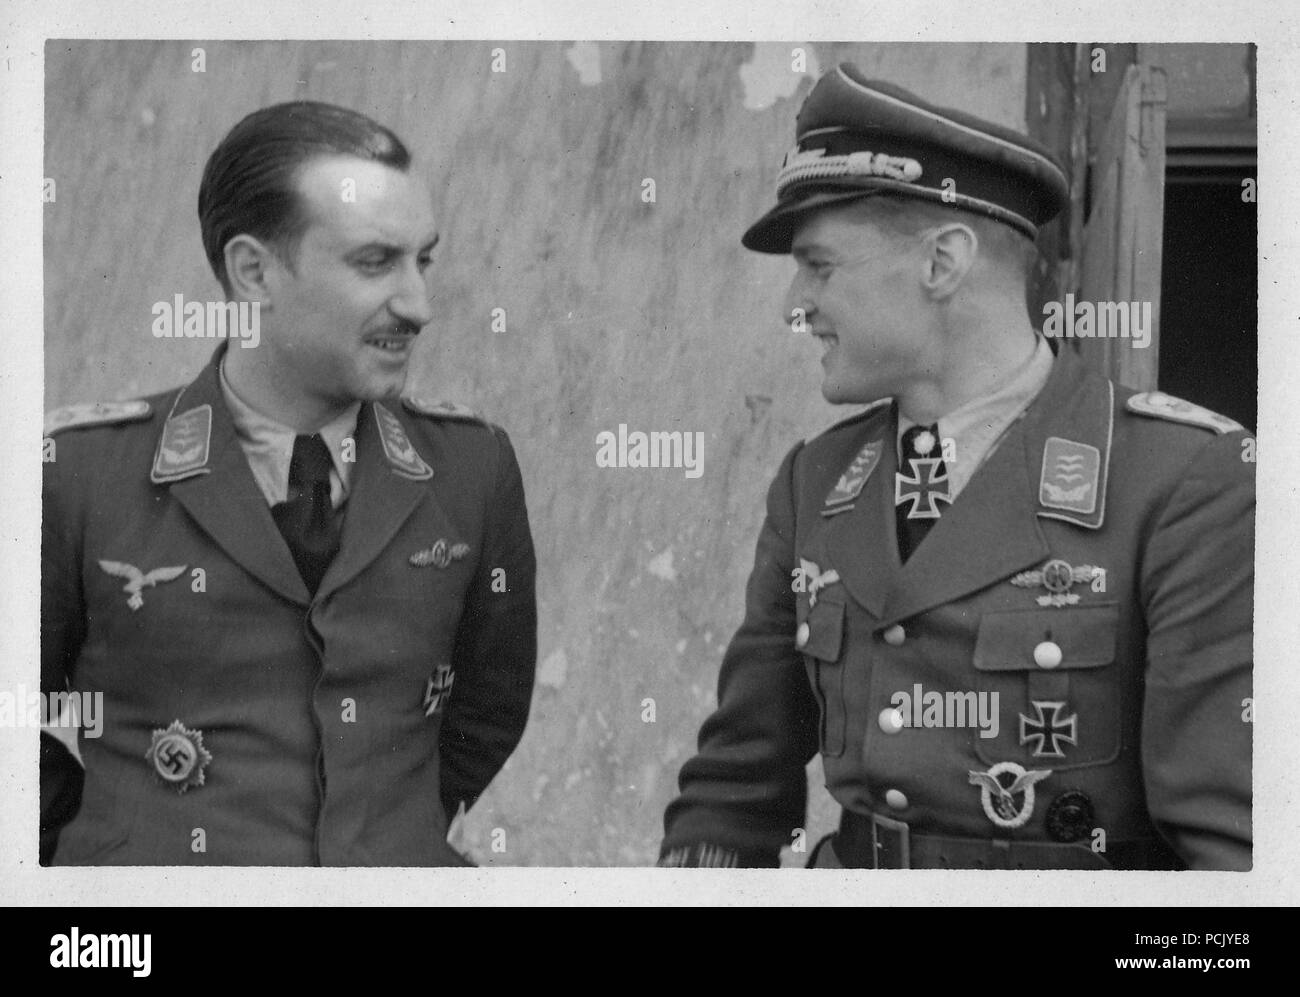 Image à partir d'un album de photos relatives à II. Gruppe, Jagdgeschwader 3 : Hauptmann Kurt Brändle portant sa Ritterkreuz avec Oakleaves, en discussion avec Hauptmann Walter Dahl de la stab/JG 3 à l'été 1943. Banque D'Images